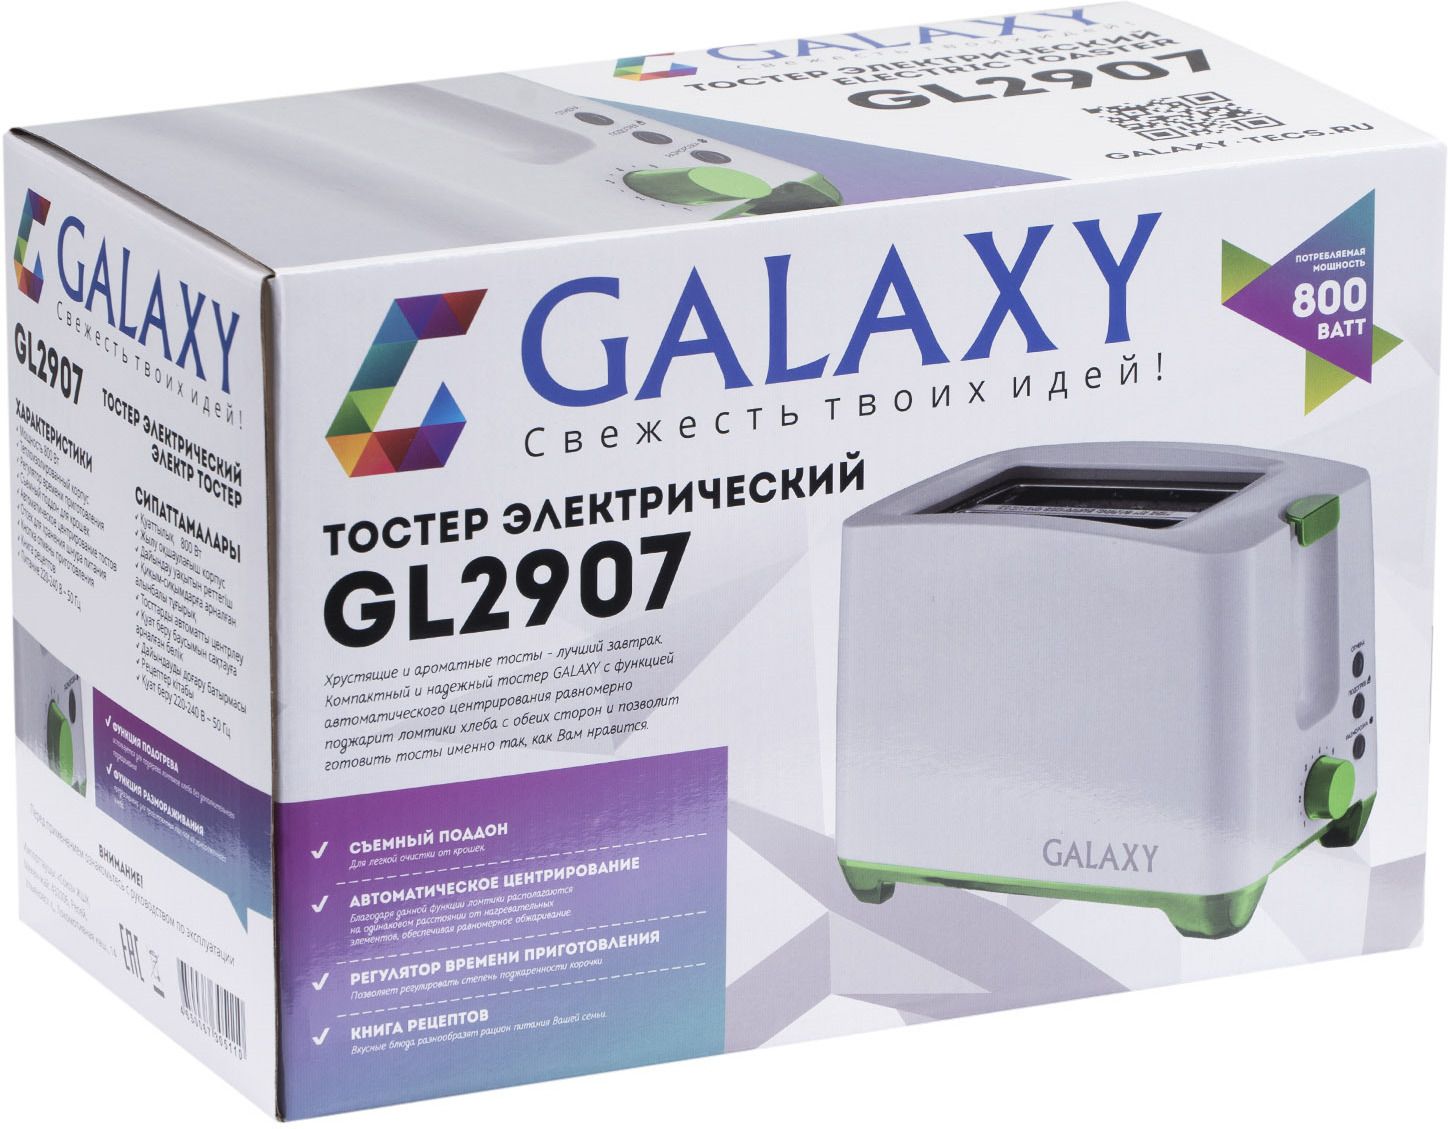  Galaxy GL 2907, , 